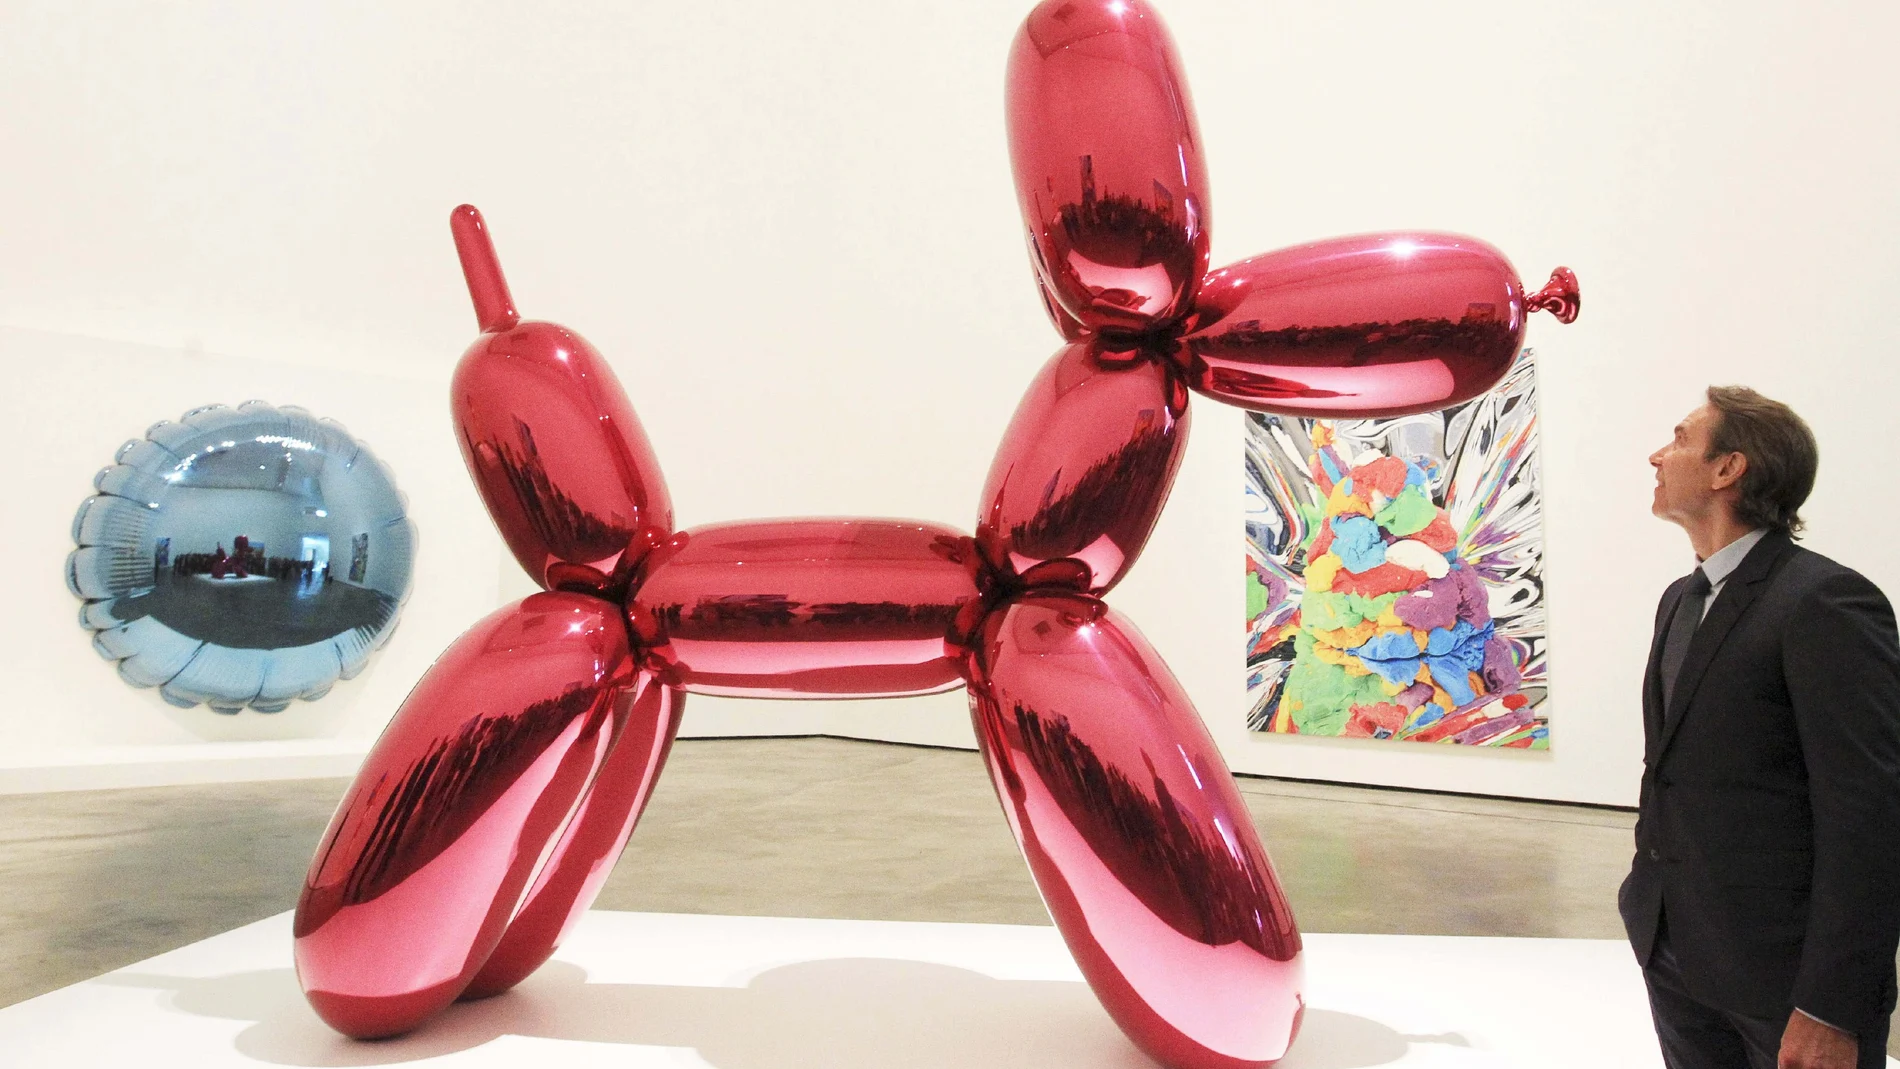 «Balloon dog» es una de las obras más representativas de Jeff Koons, escultor y pintor estadounidense que responde al arte conceptual y pop